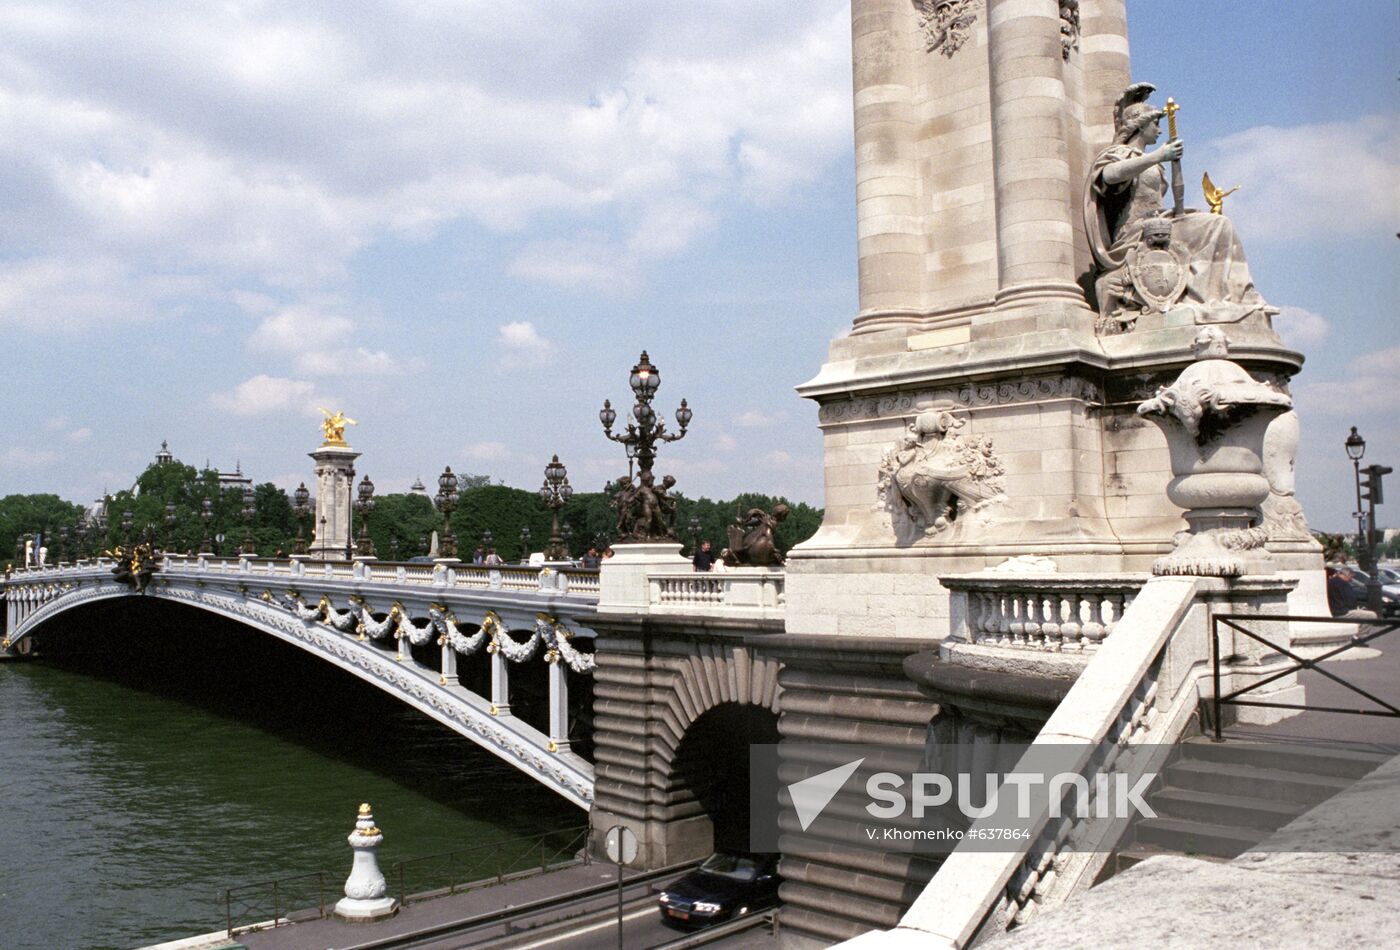 Bridge named after Russian Emperor Alexander III